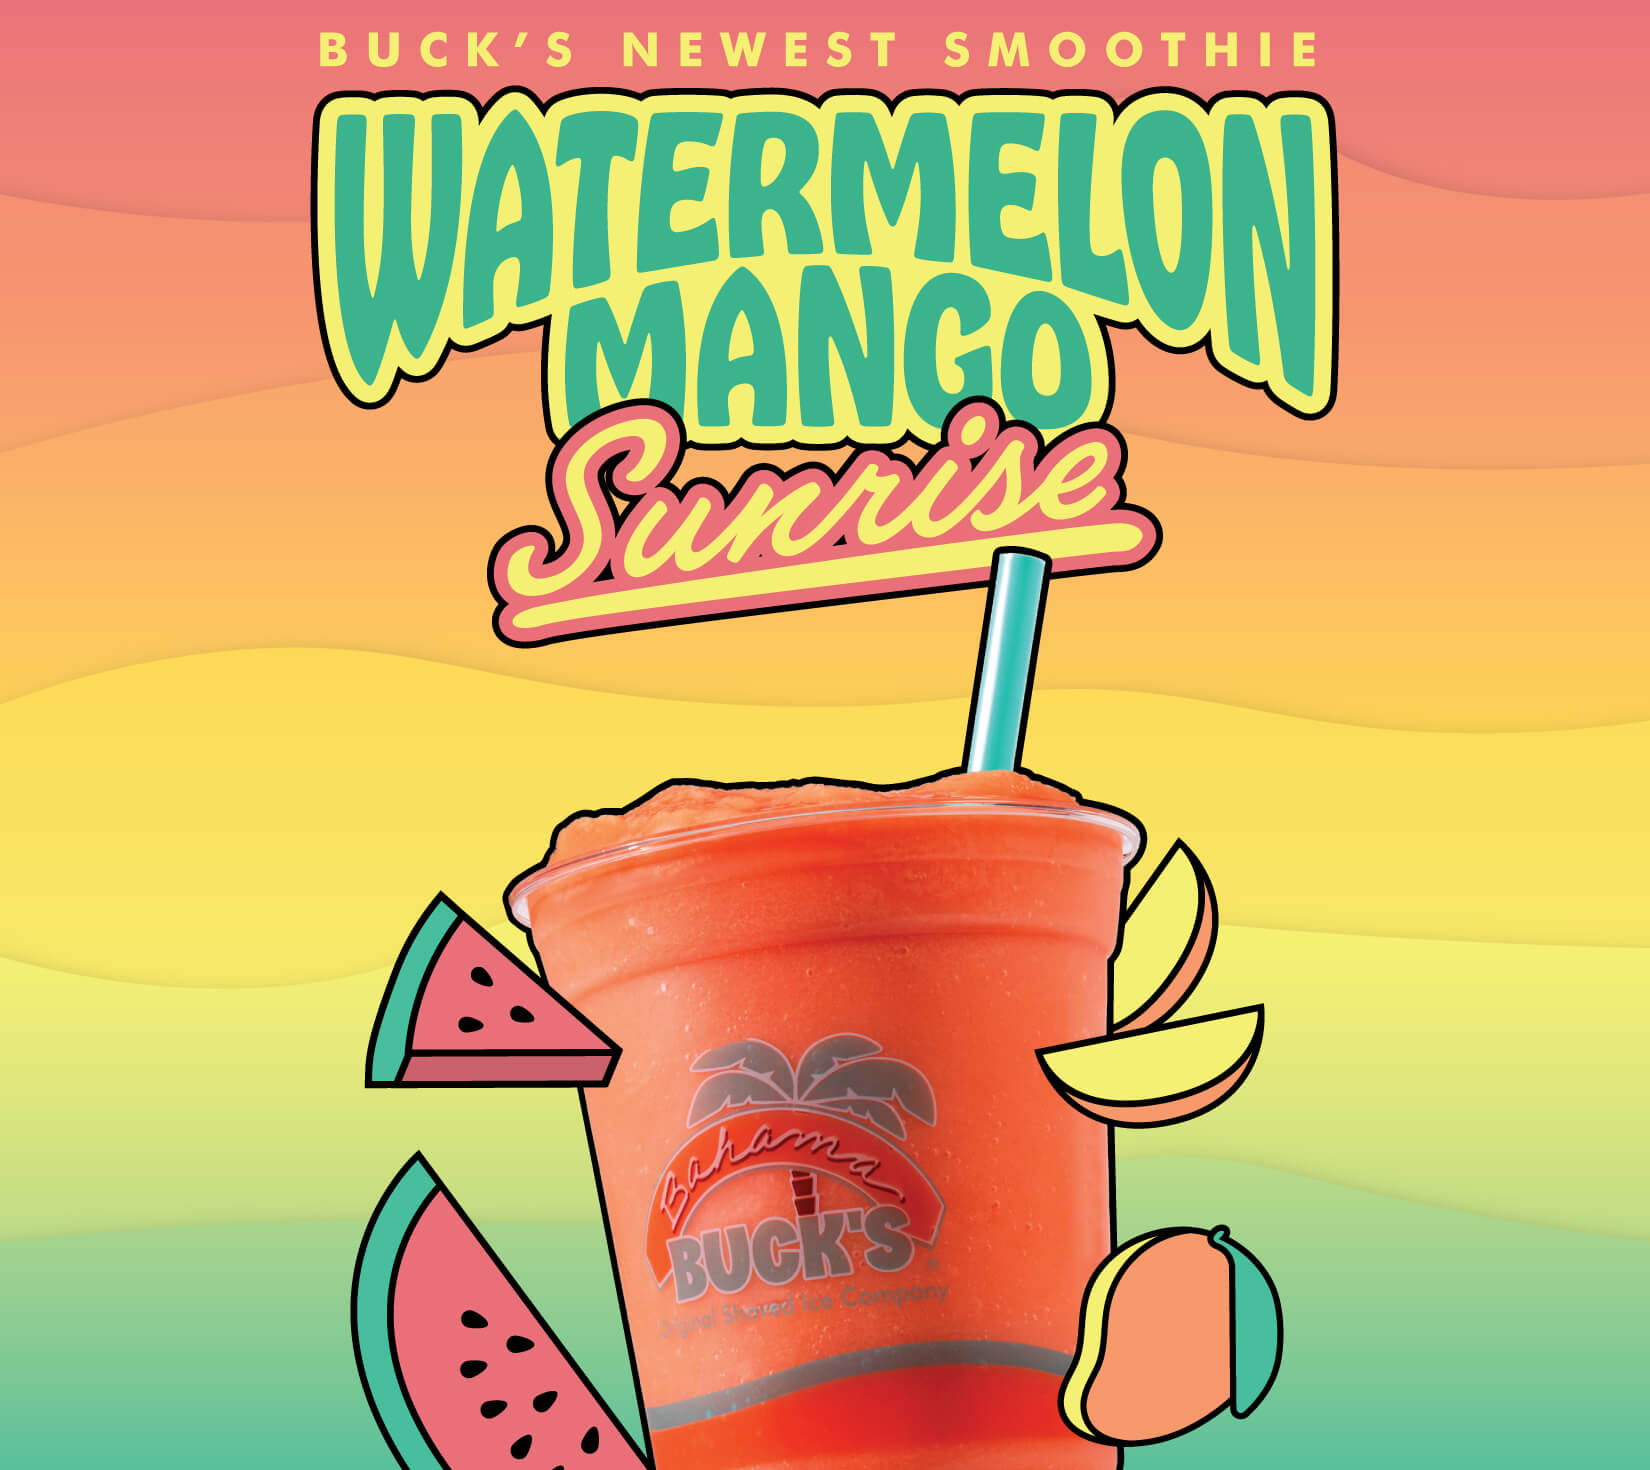 Watermelon-Mango-Sunrise-Smoothie